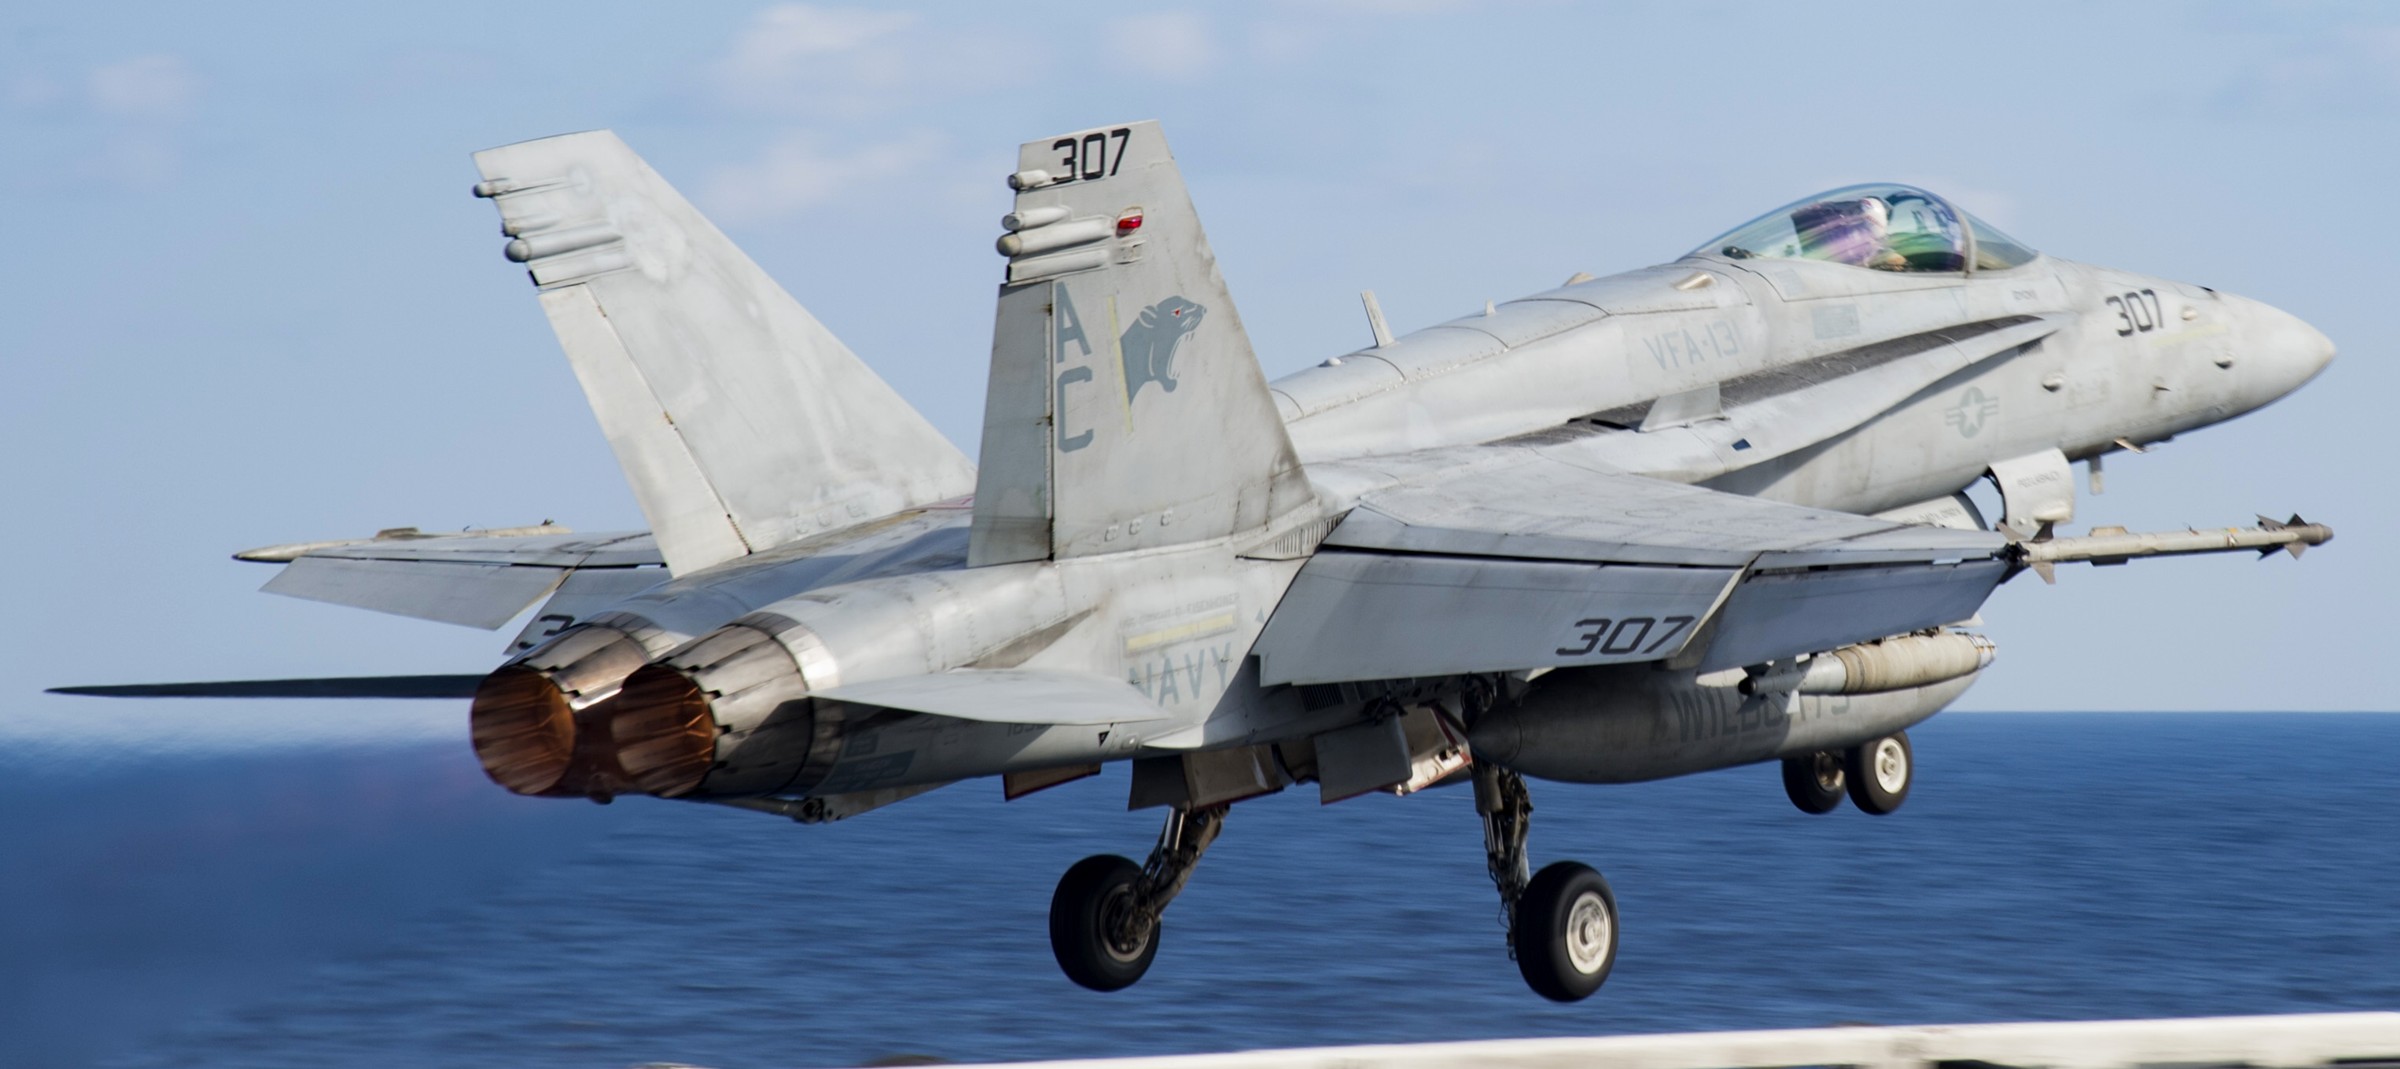 vfa-131 wildcats strike fighter squadron f/a-18c hornet cvw-3 uss dwight d. eisenhower cvn-69 2016 08